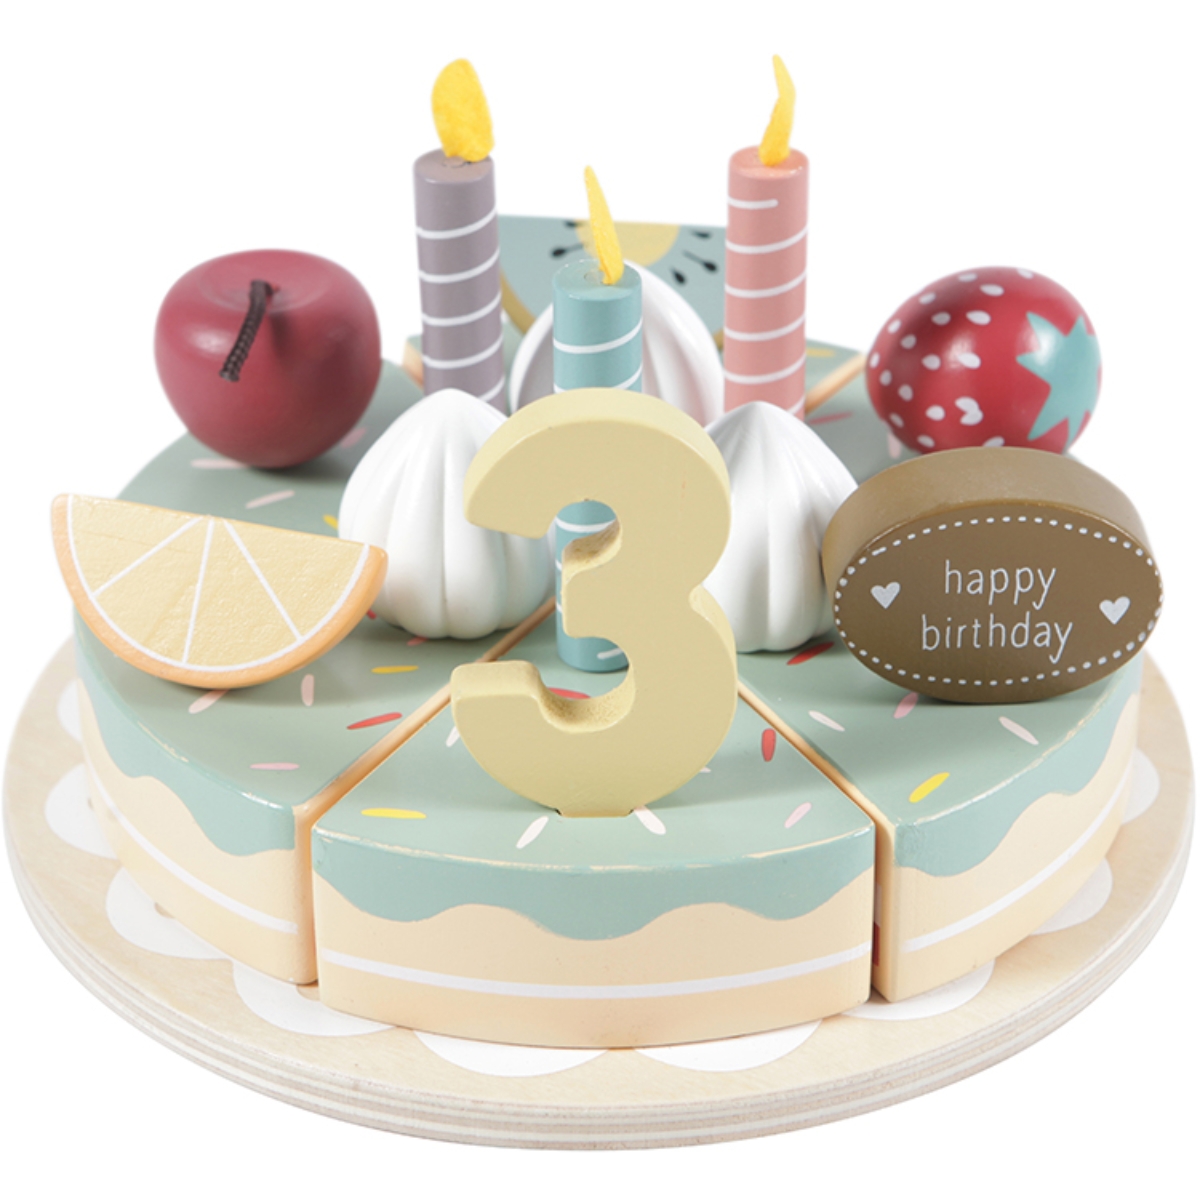 40 idées de déco gâteau d'anniversaire - Marie Claire